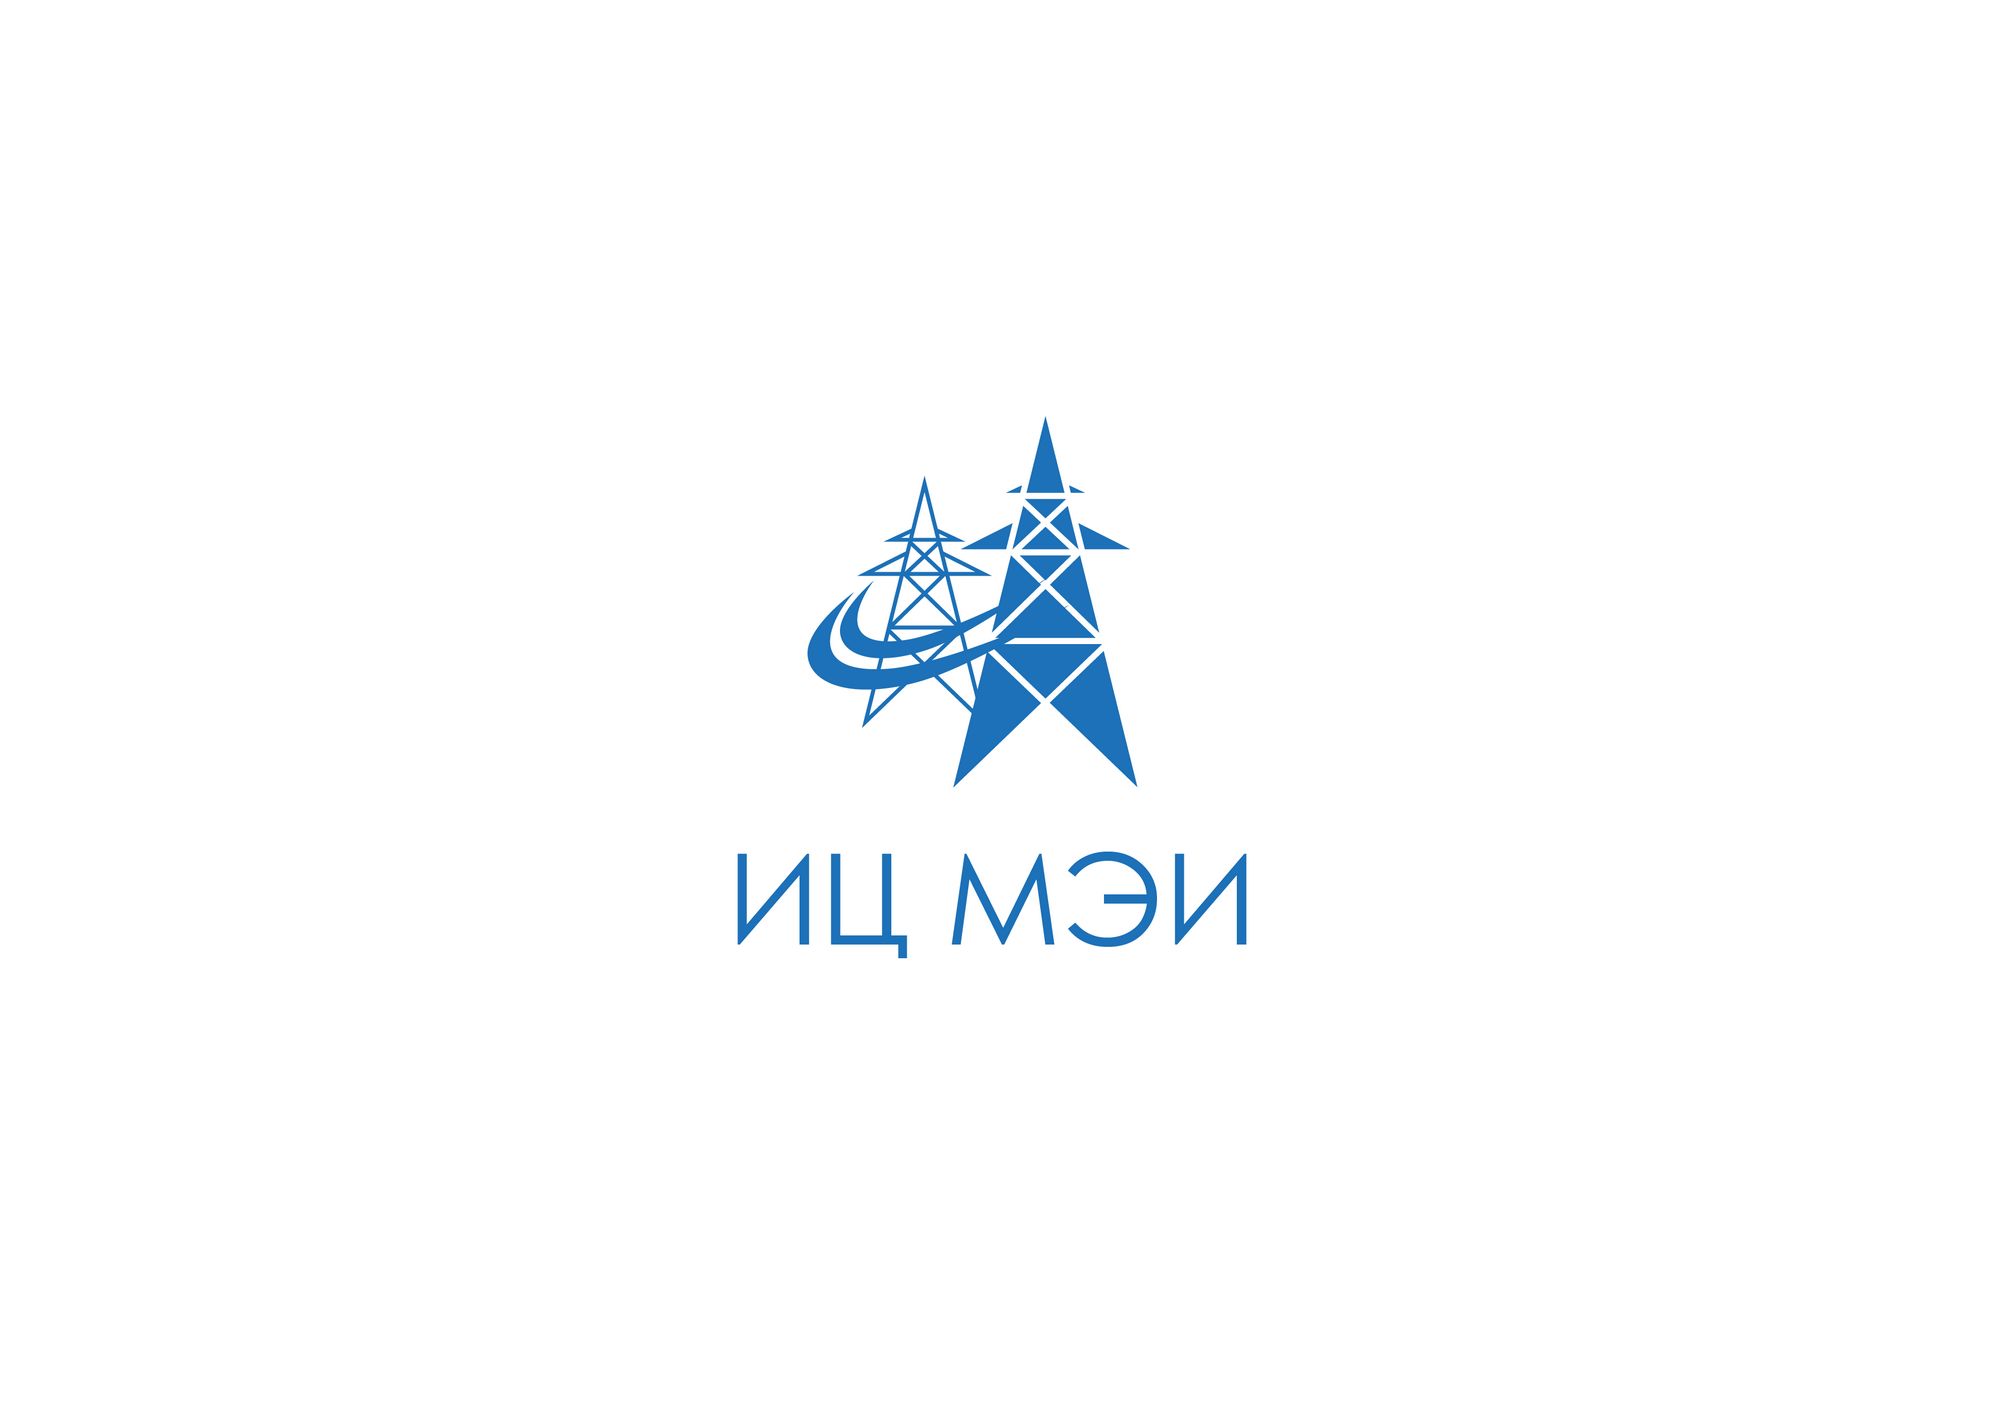 Логотип для ИЦ МЭИ / EC MEI (Инжиниринговый Центр МЭИ) - дизайнер kirilln84